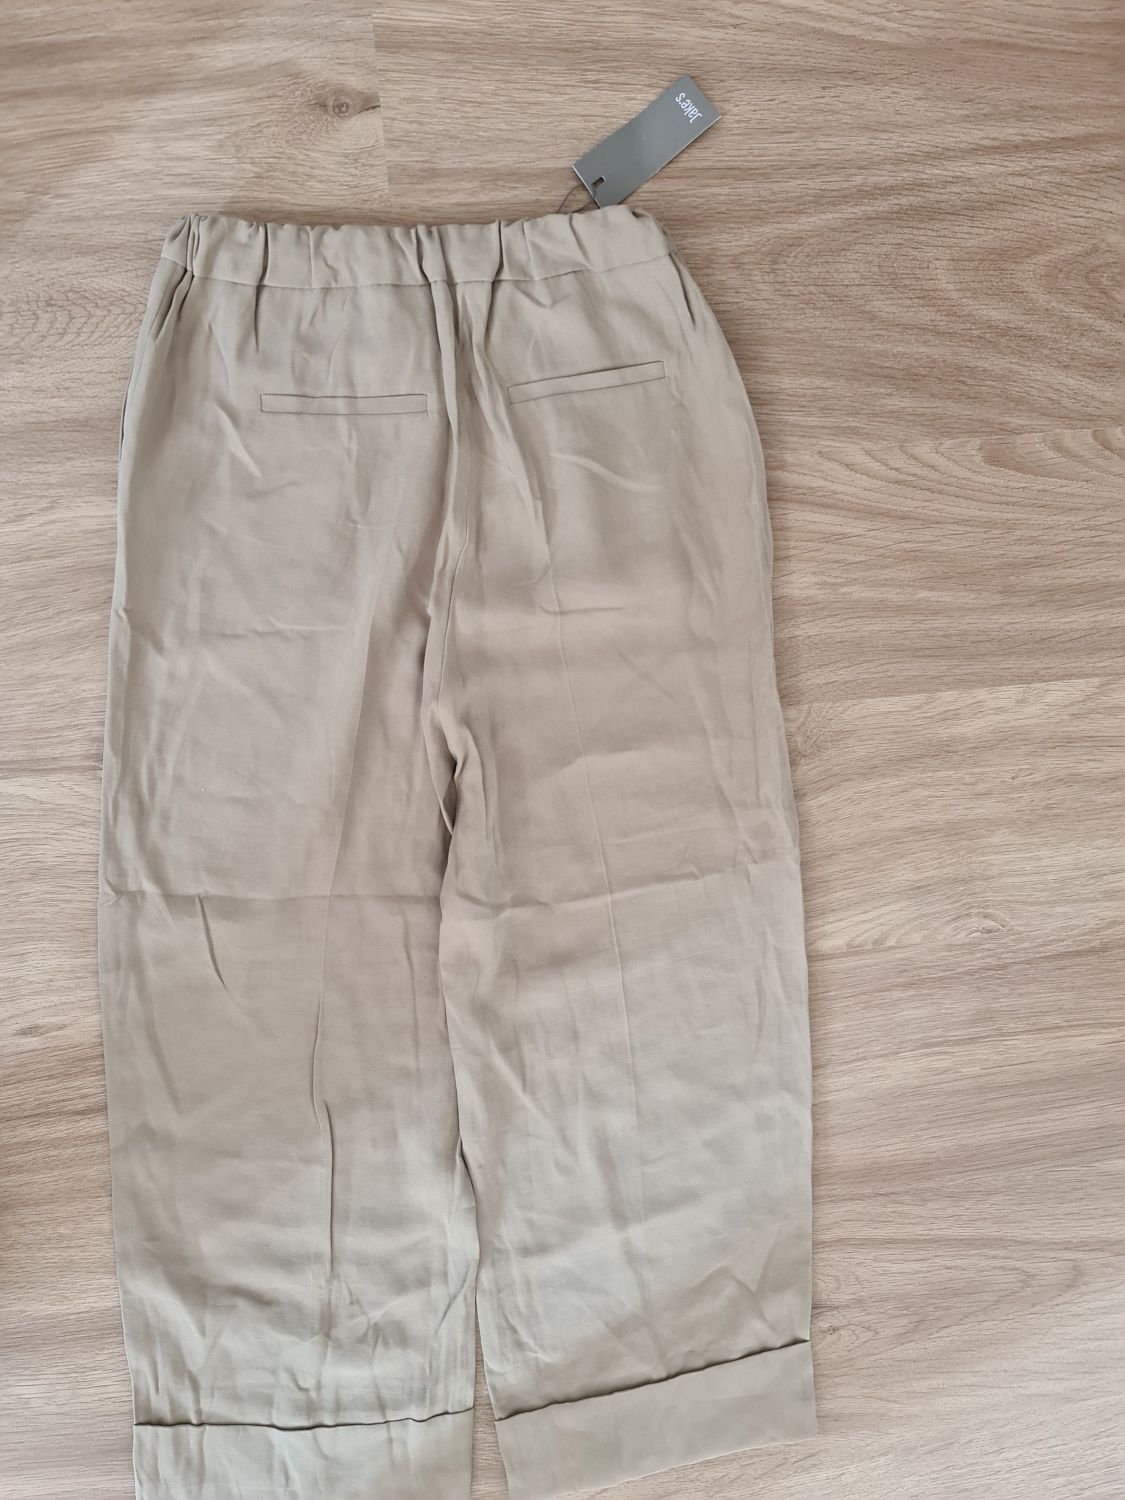 Дамски панталон размер 36, S. Нов с етикет.